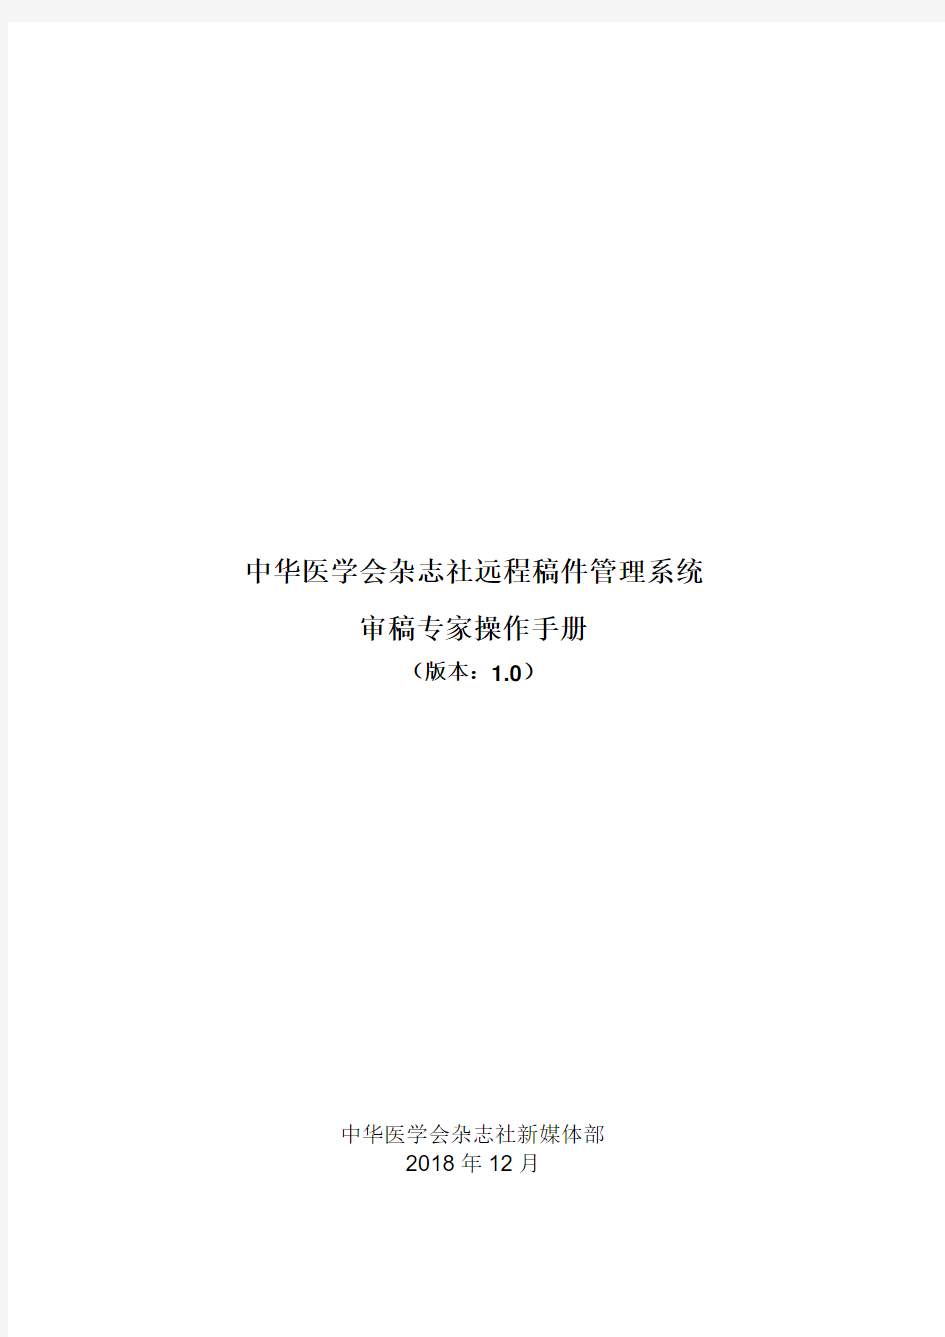 中华医学会杂志社远程稿件管理系统审稿专家操作手册